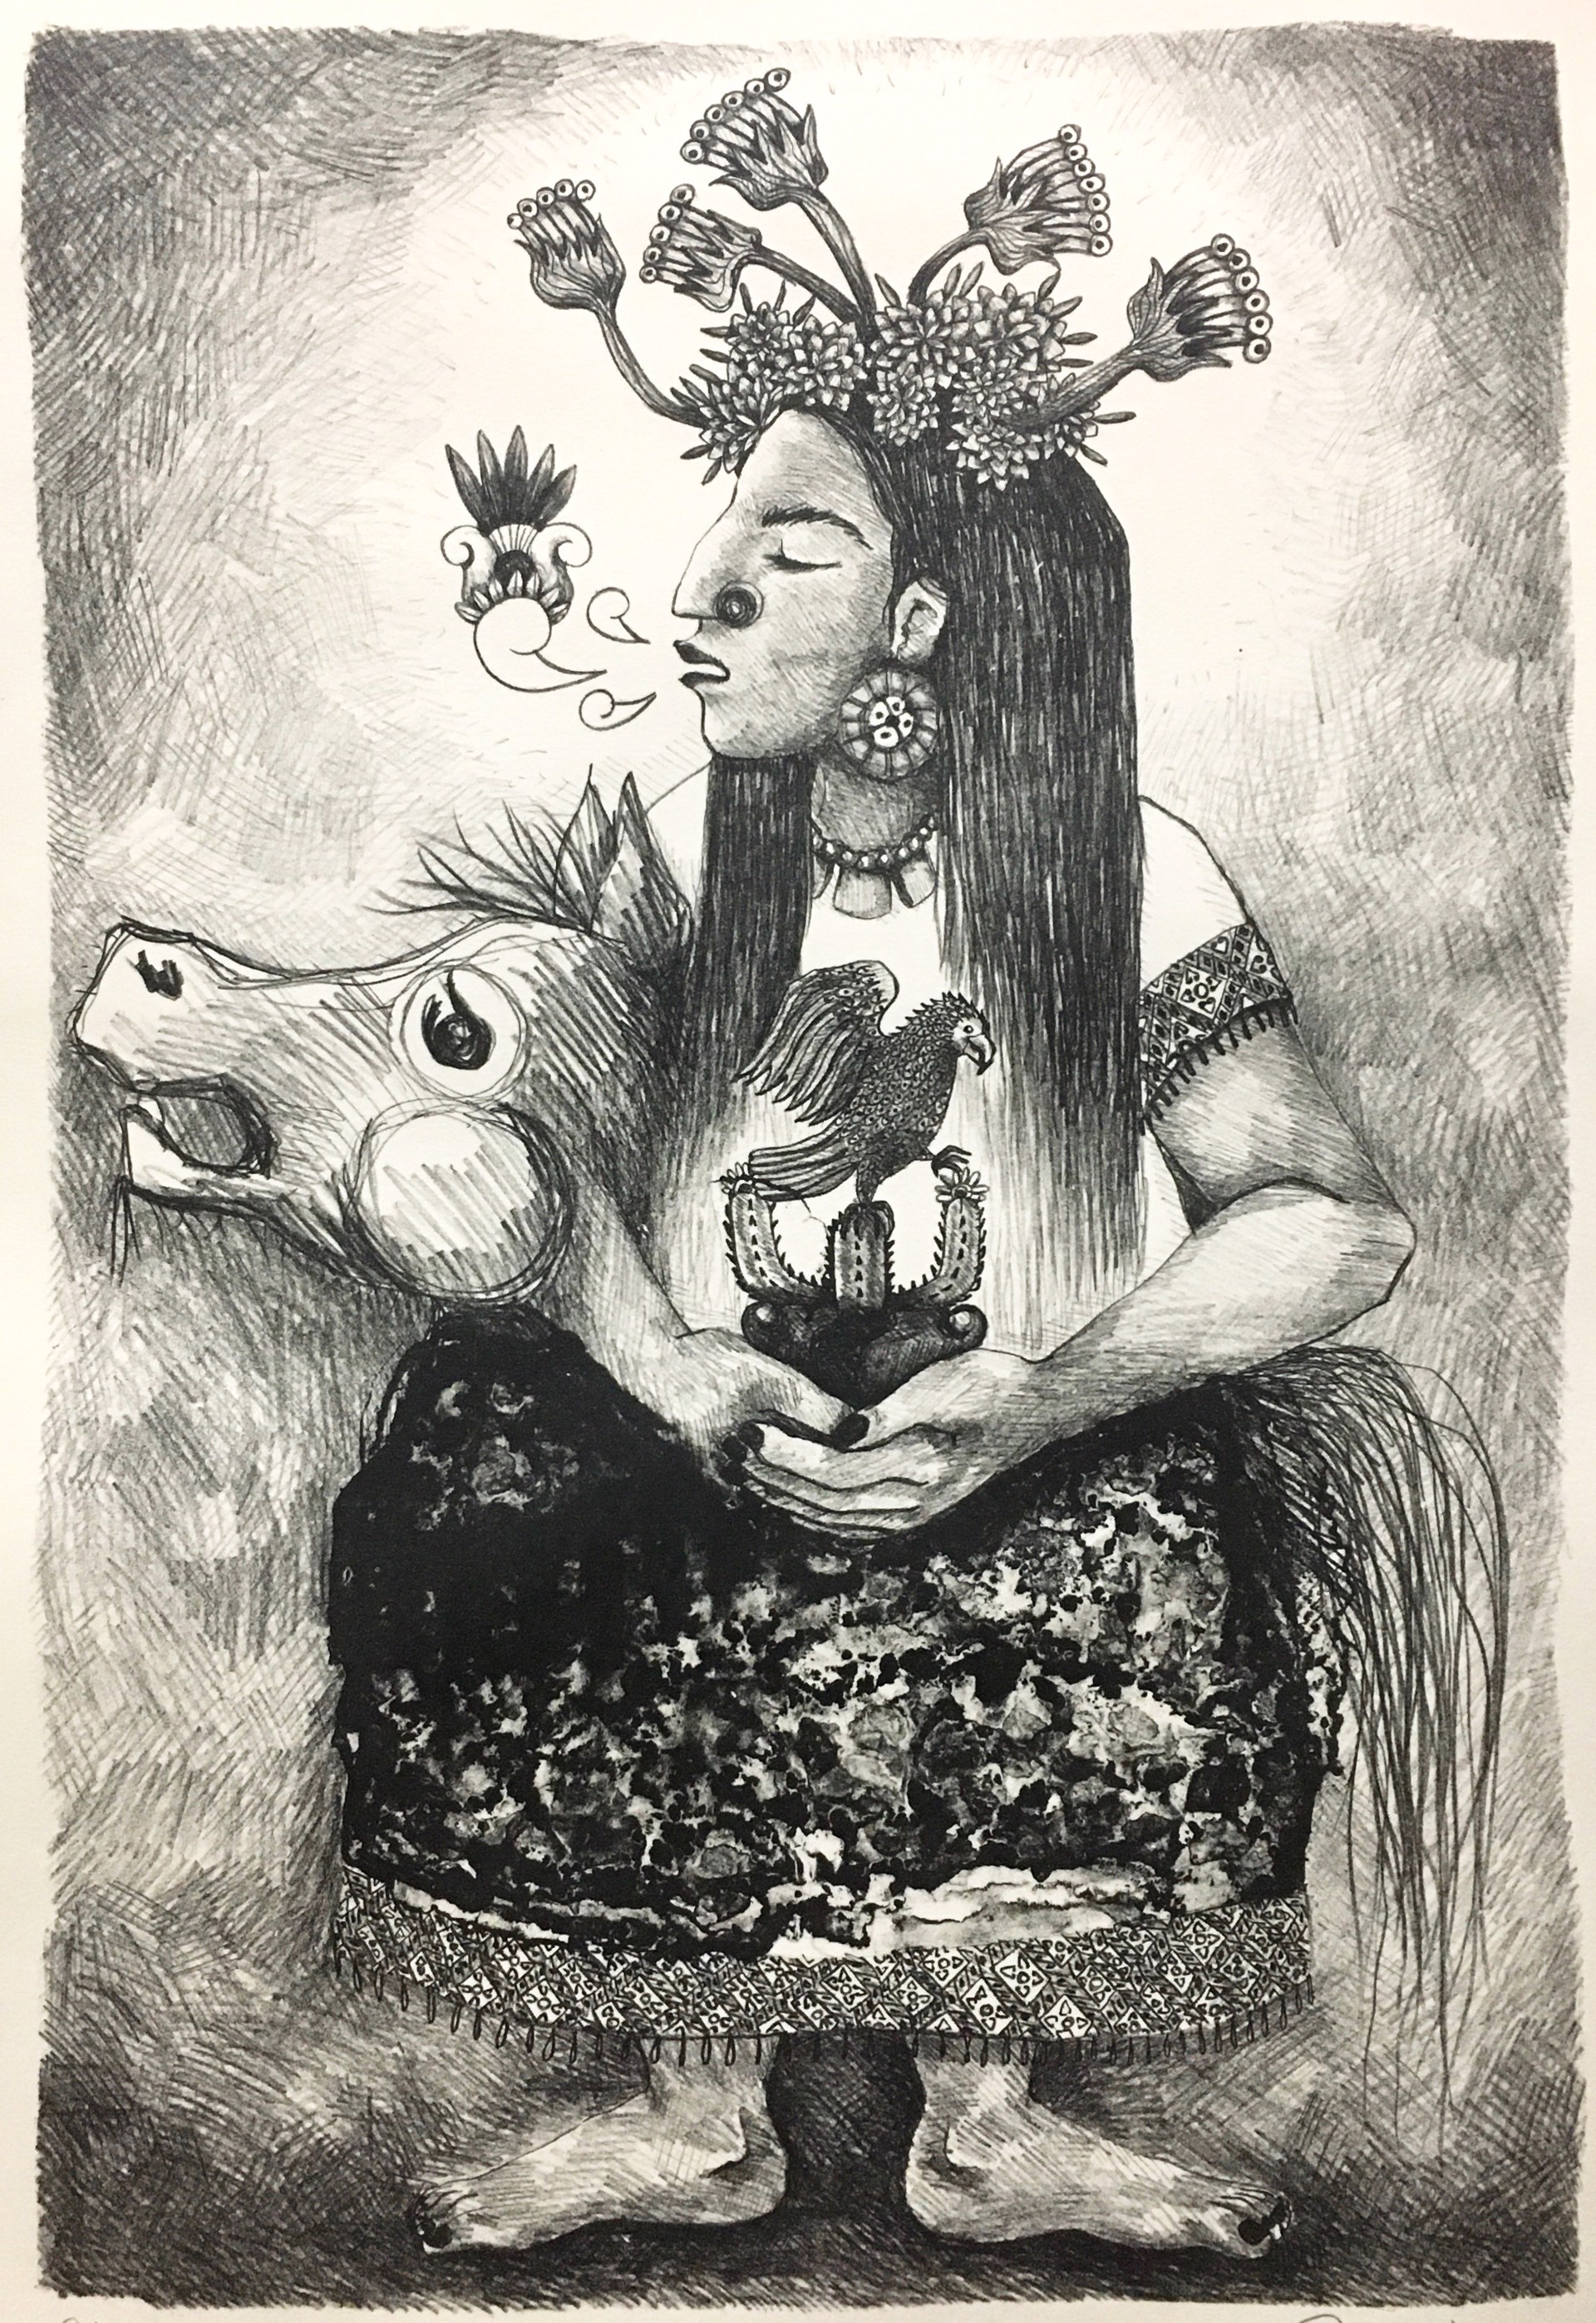 La Malinche by Jainite Silvestre